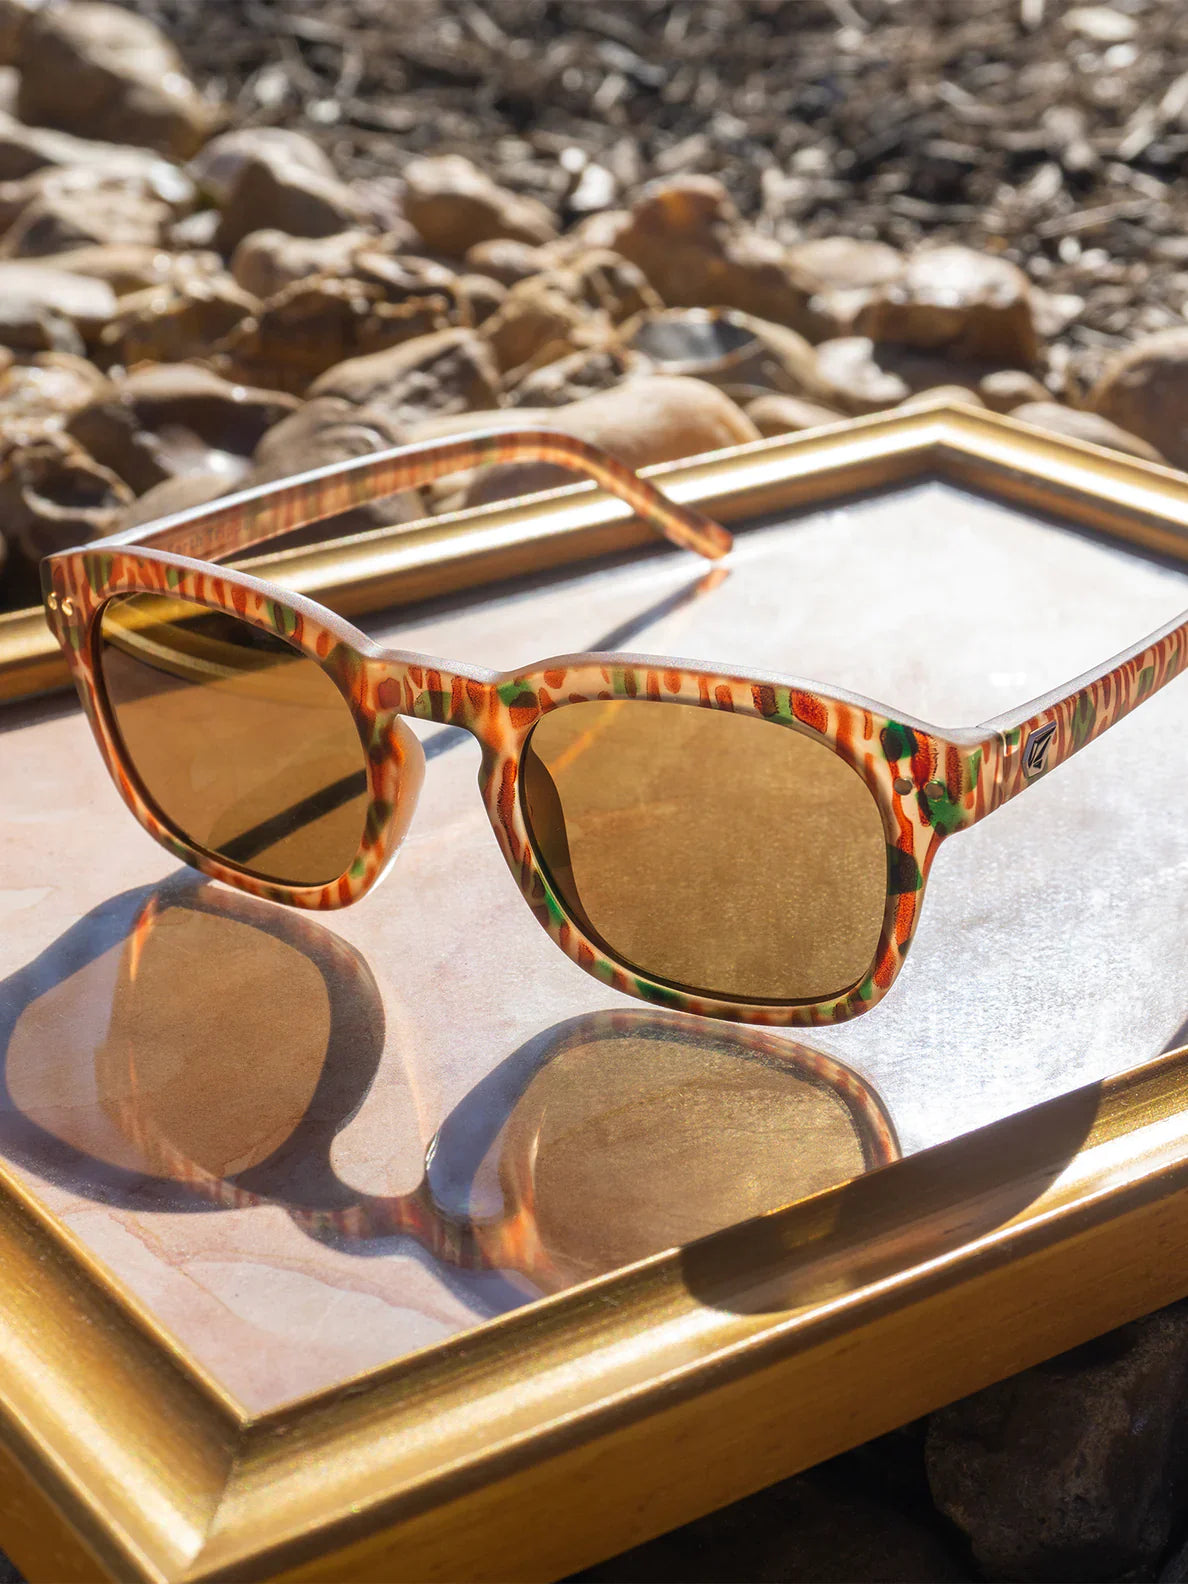 Gafas de sol Volcom Earth Tripper Sunglasses - Matte Geo/Bronze (Mega Orange) | Gafas de sol | Volcom Shop | surfdevils.com